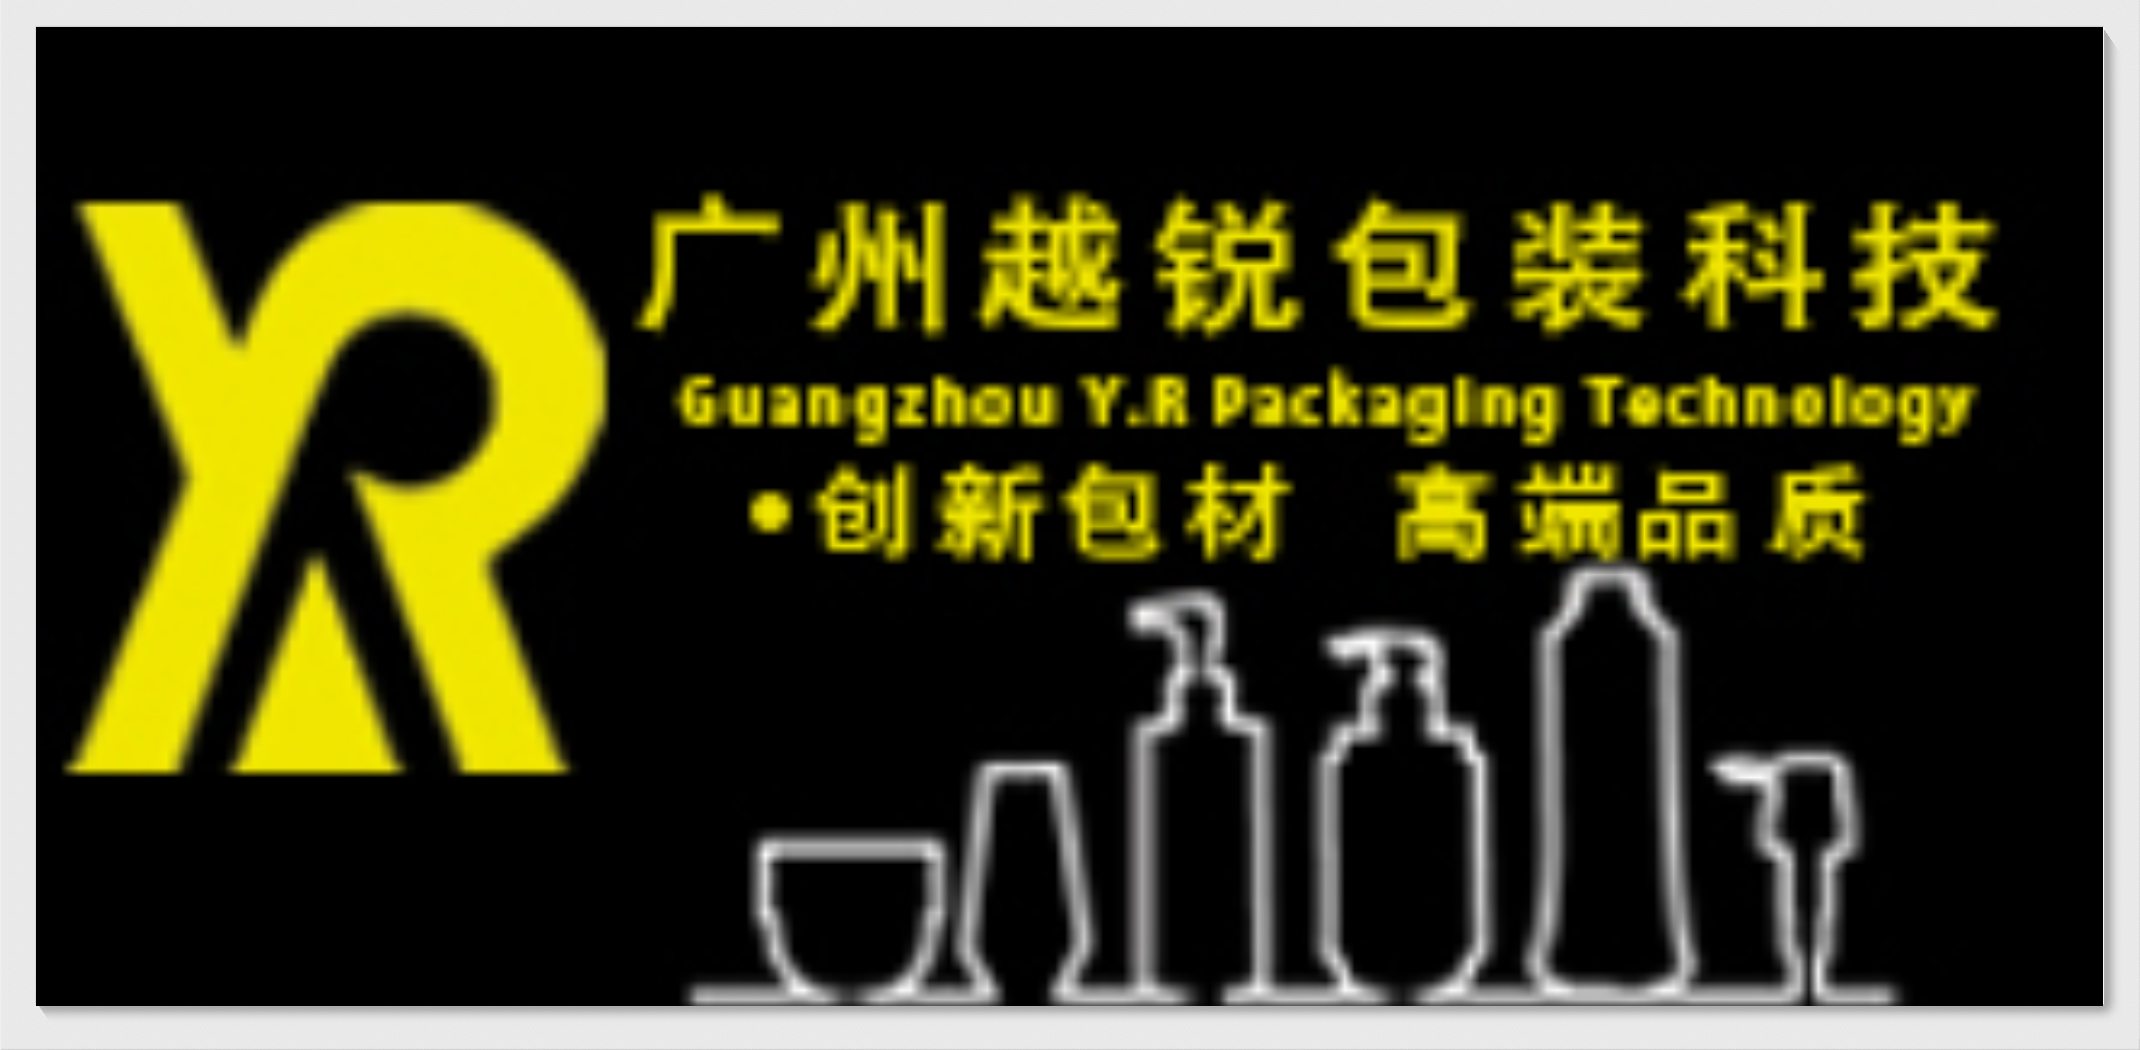 广州越锐包装科技有限公司